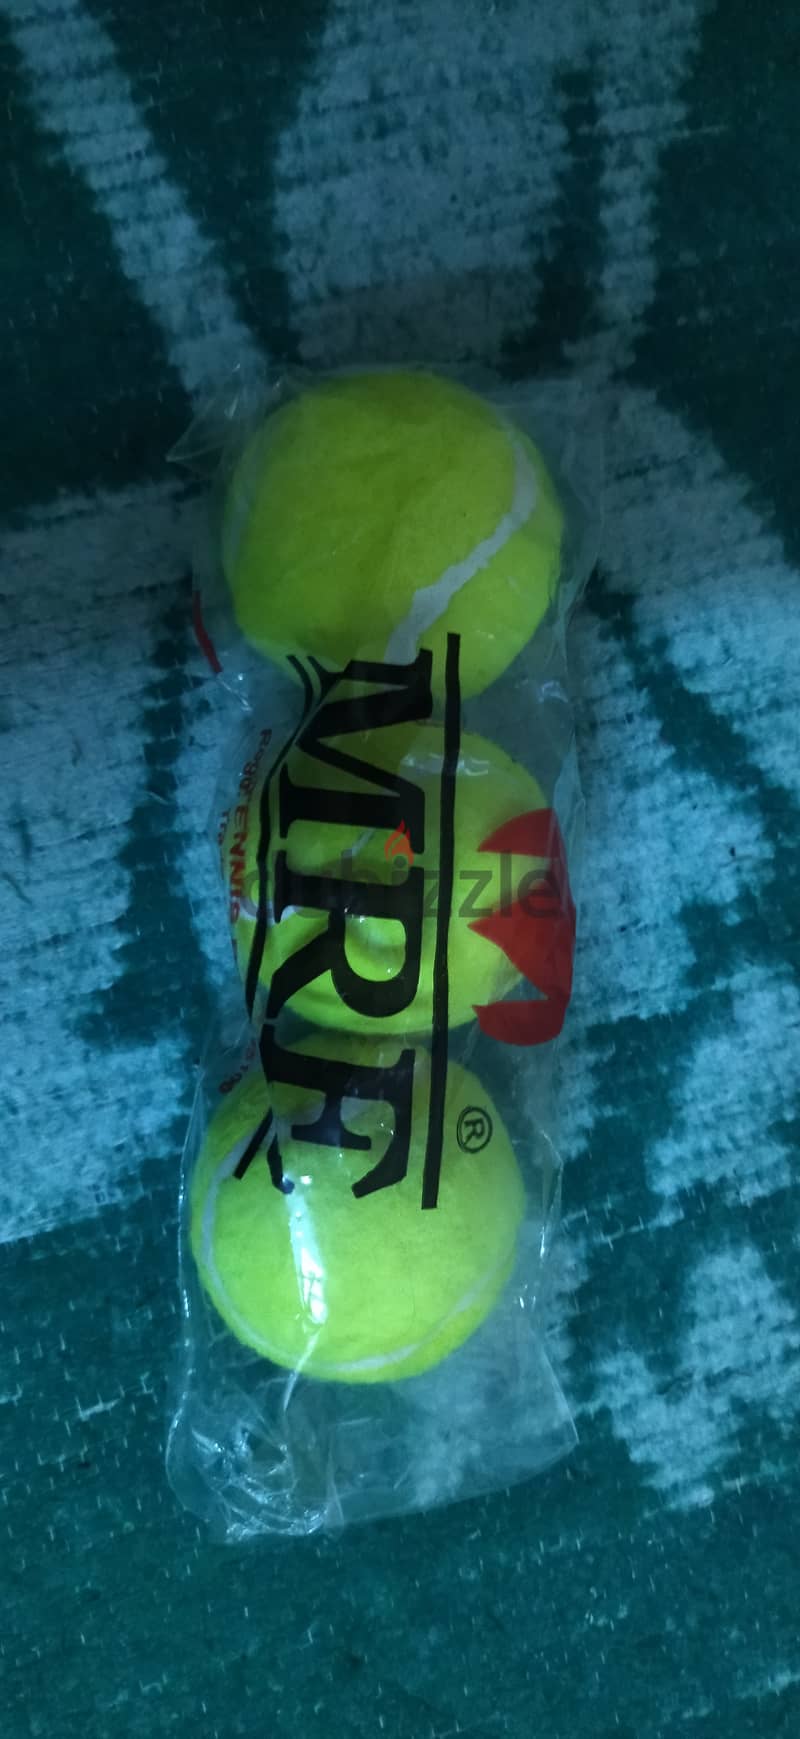 Tennis ball (3 piece ) 11